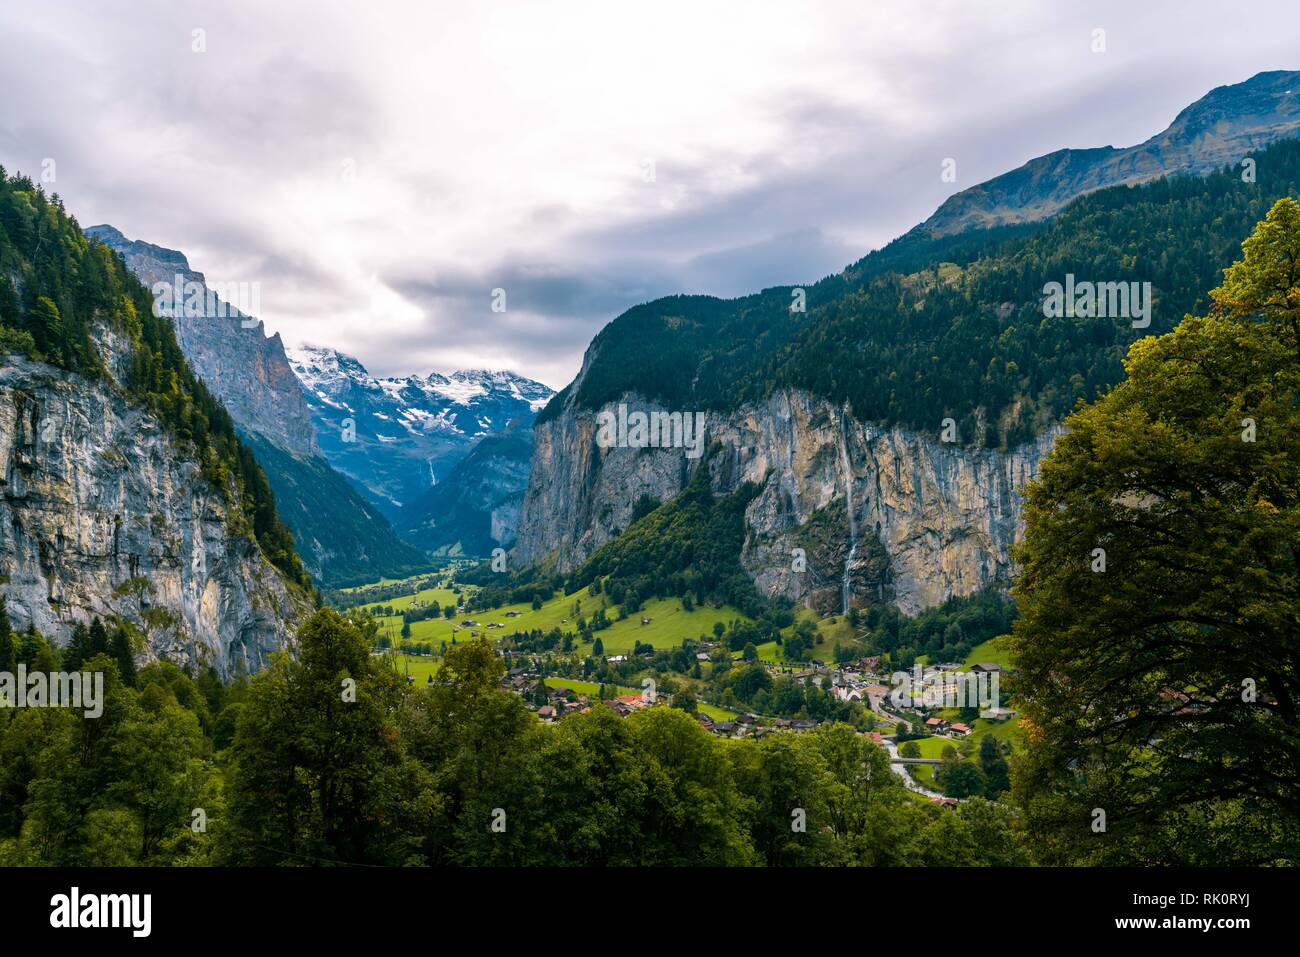 La vallée de Lauterbrunnen, près d'Interlaken dans l'Oberland Bernois, Suisse Banque D'Images